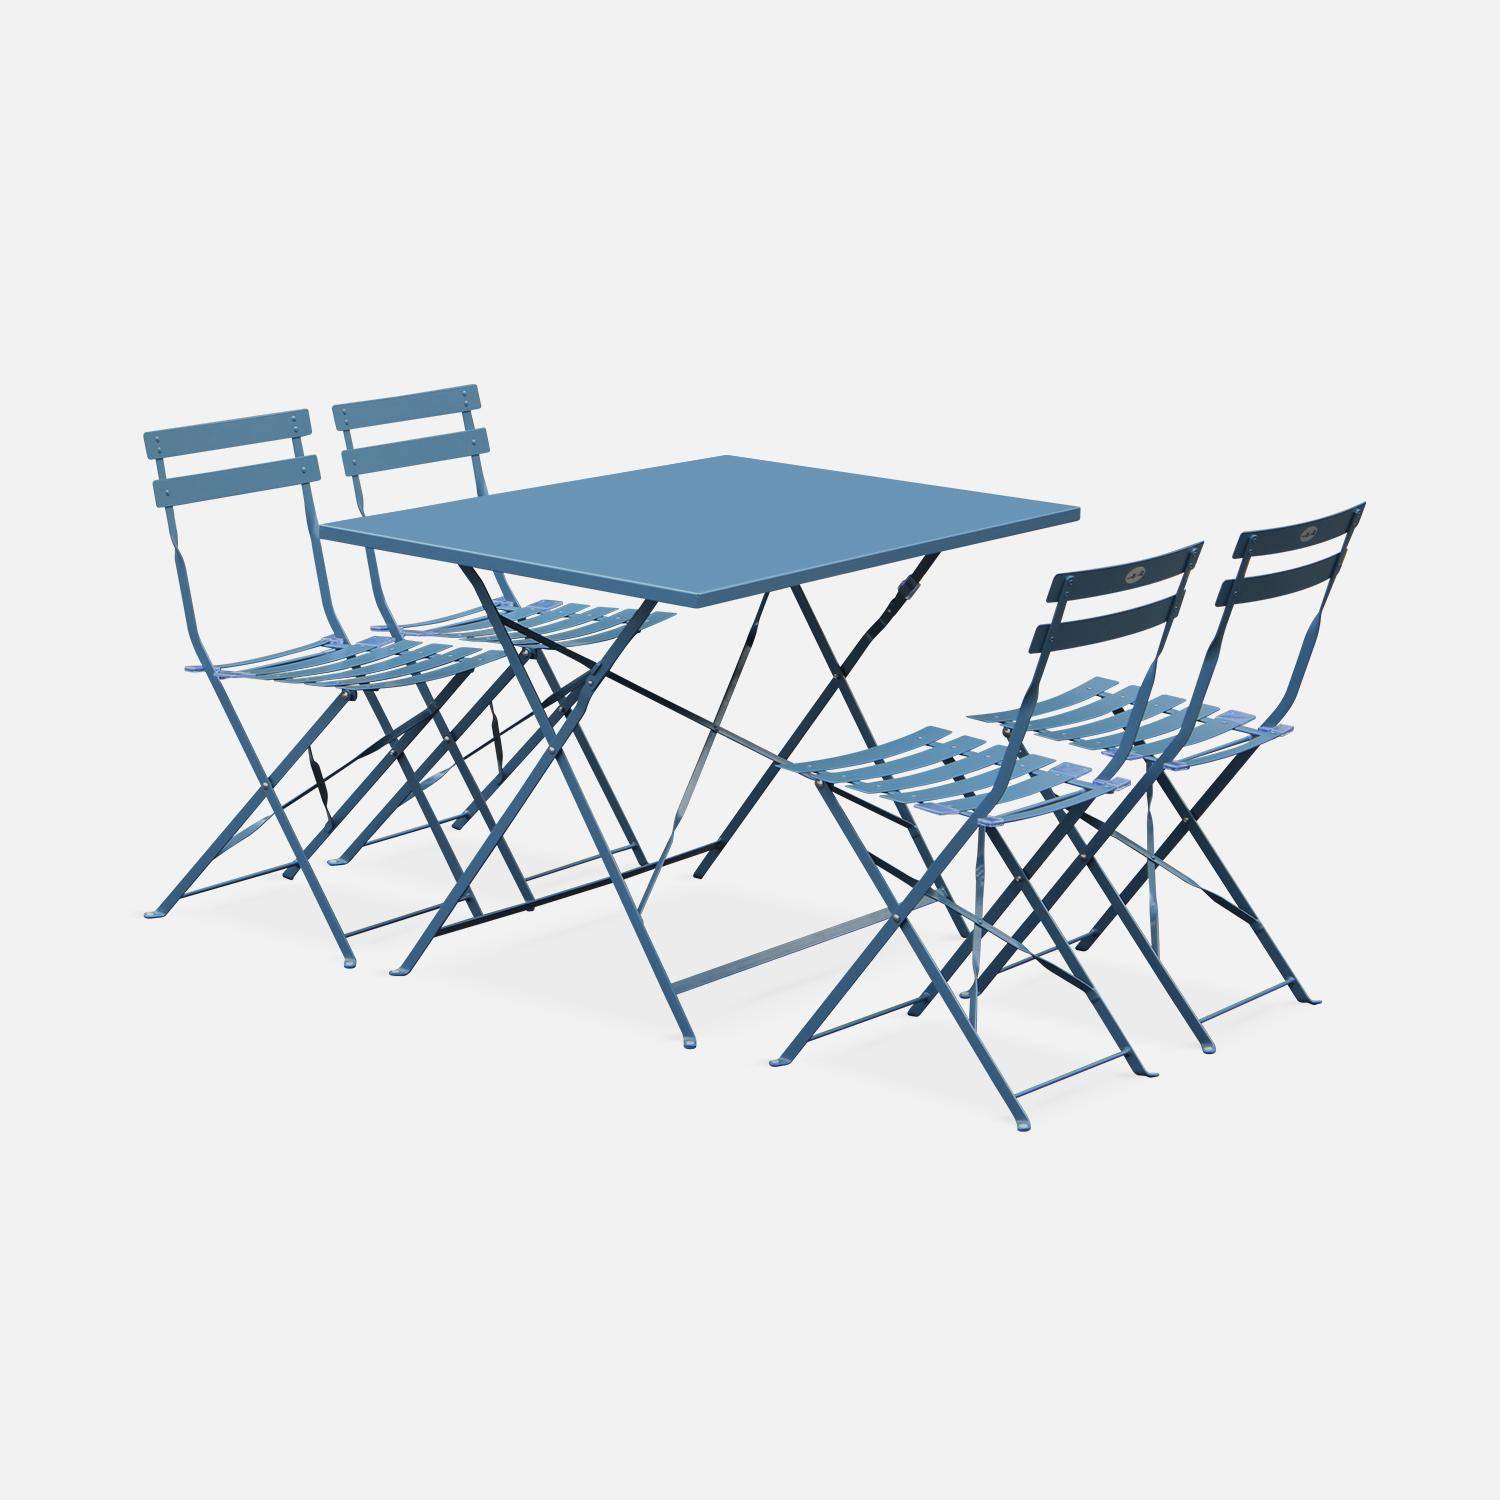 Salotto da giardino, bistrot, pieghevole - modello: Emilia, rettangolare, colore: Blu ombreggiato - Tavolo, dimensioni: 110x70cm, con quattro sedie pieghevoli, acciaio termolaccato,sweeek,Photo2